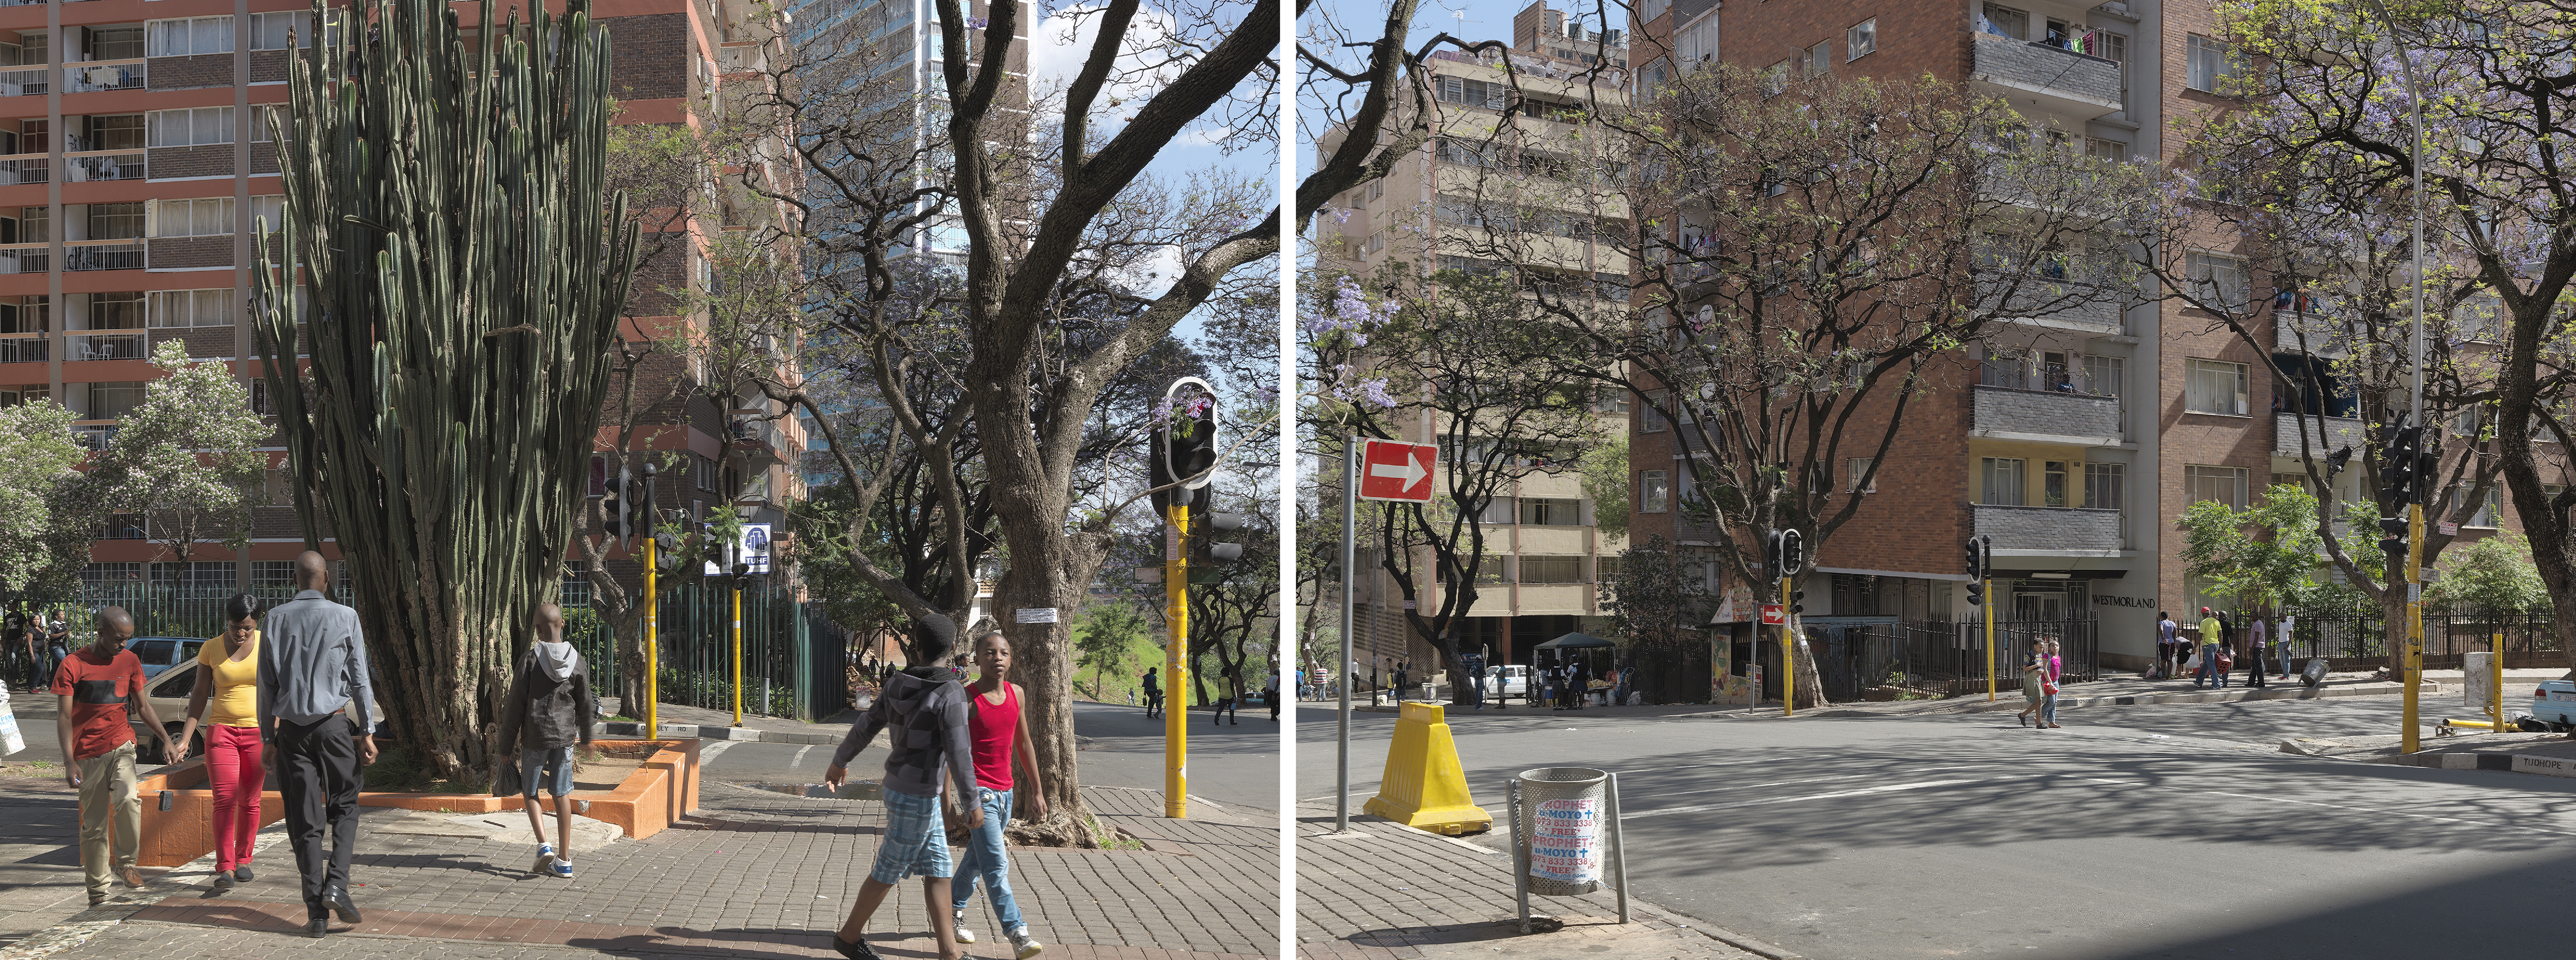  - Tudhope Avenue, Johannesburg, South Africa, 2014, 